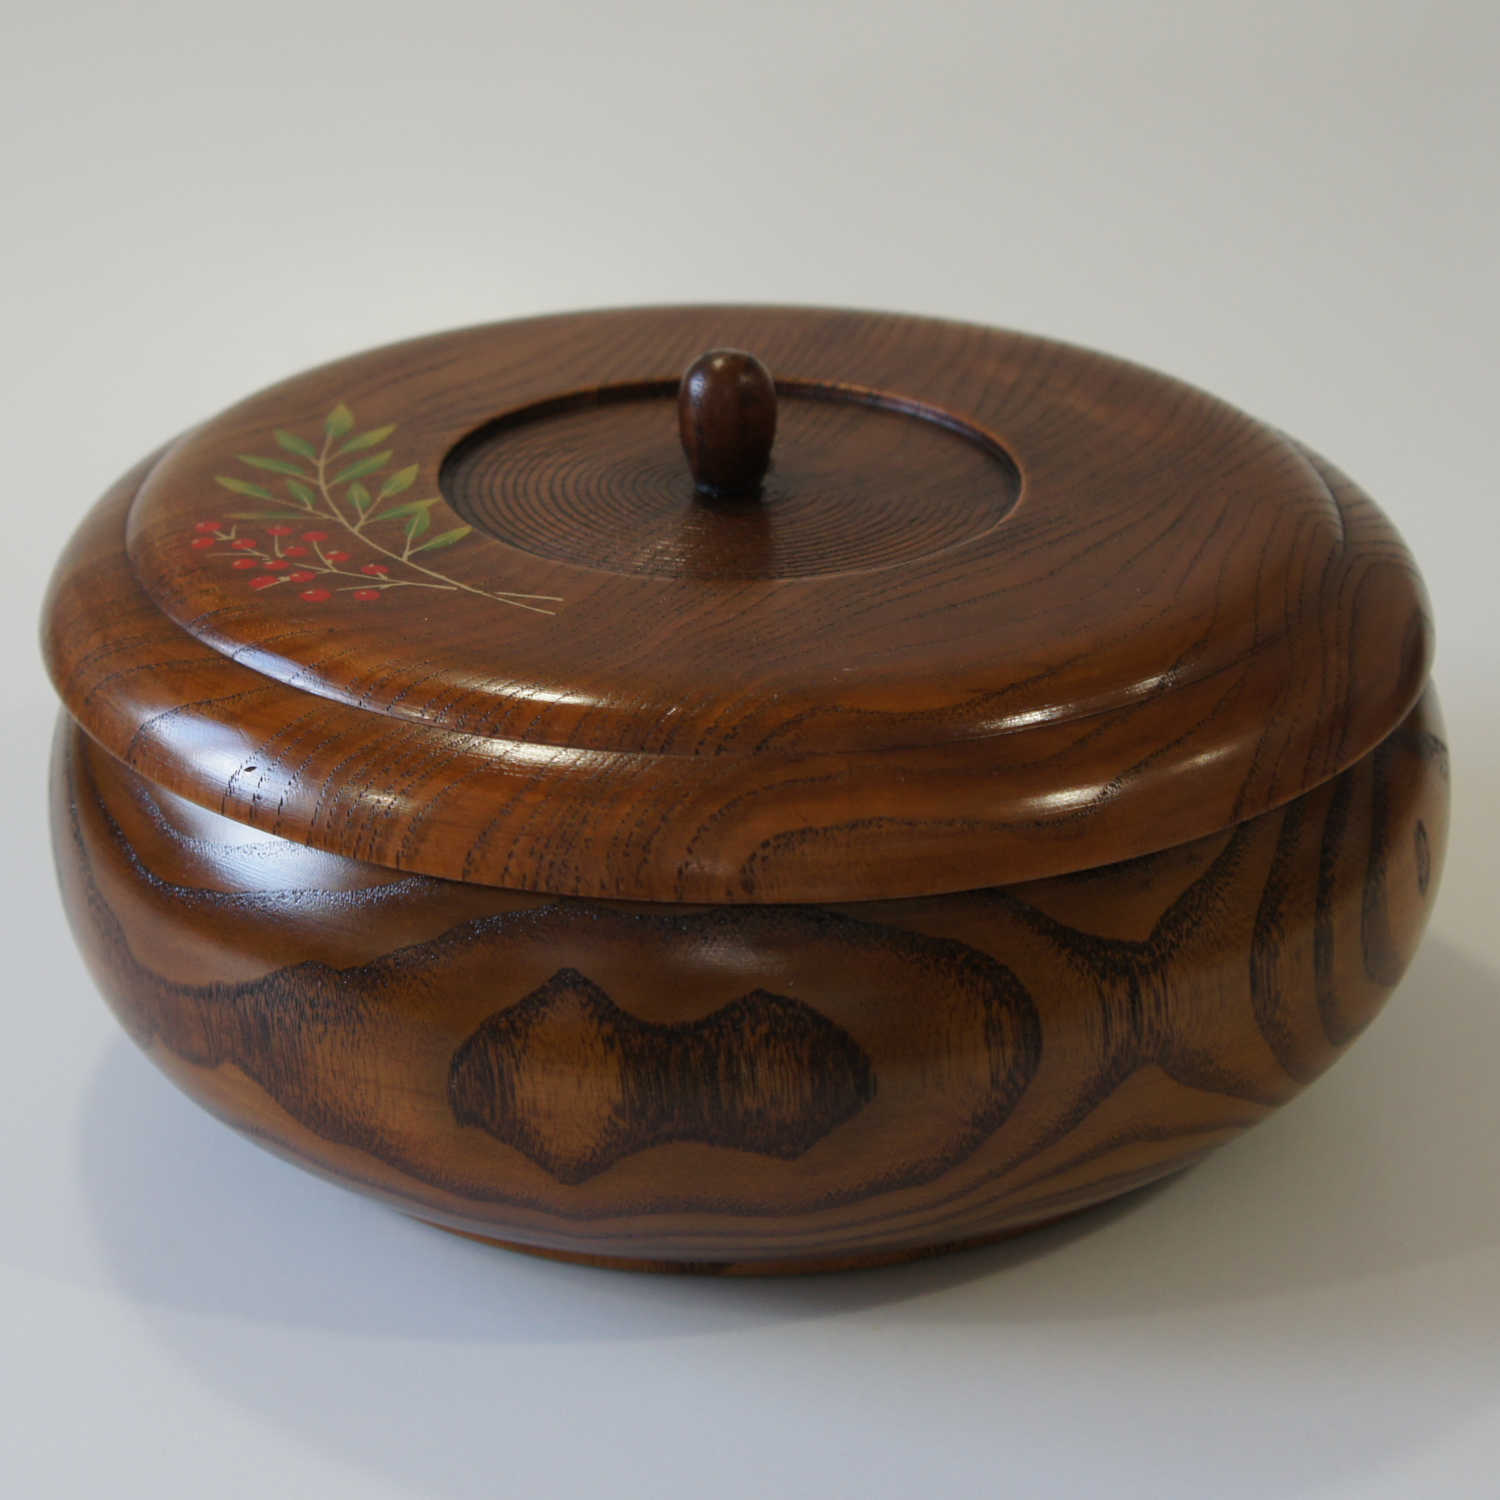 Wooden tableware